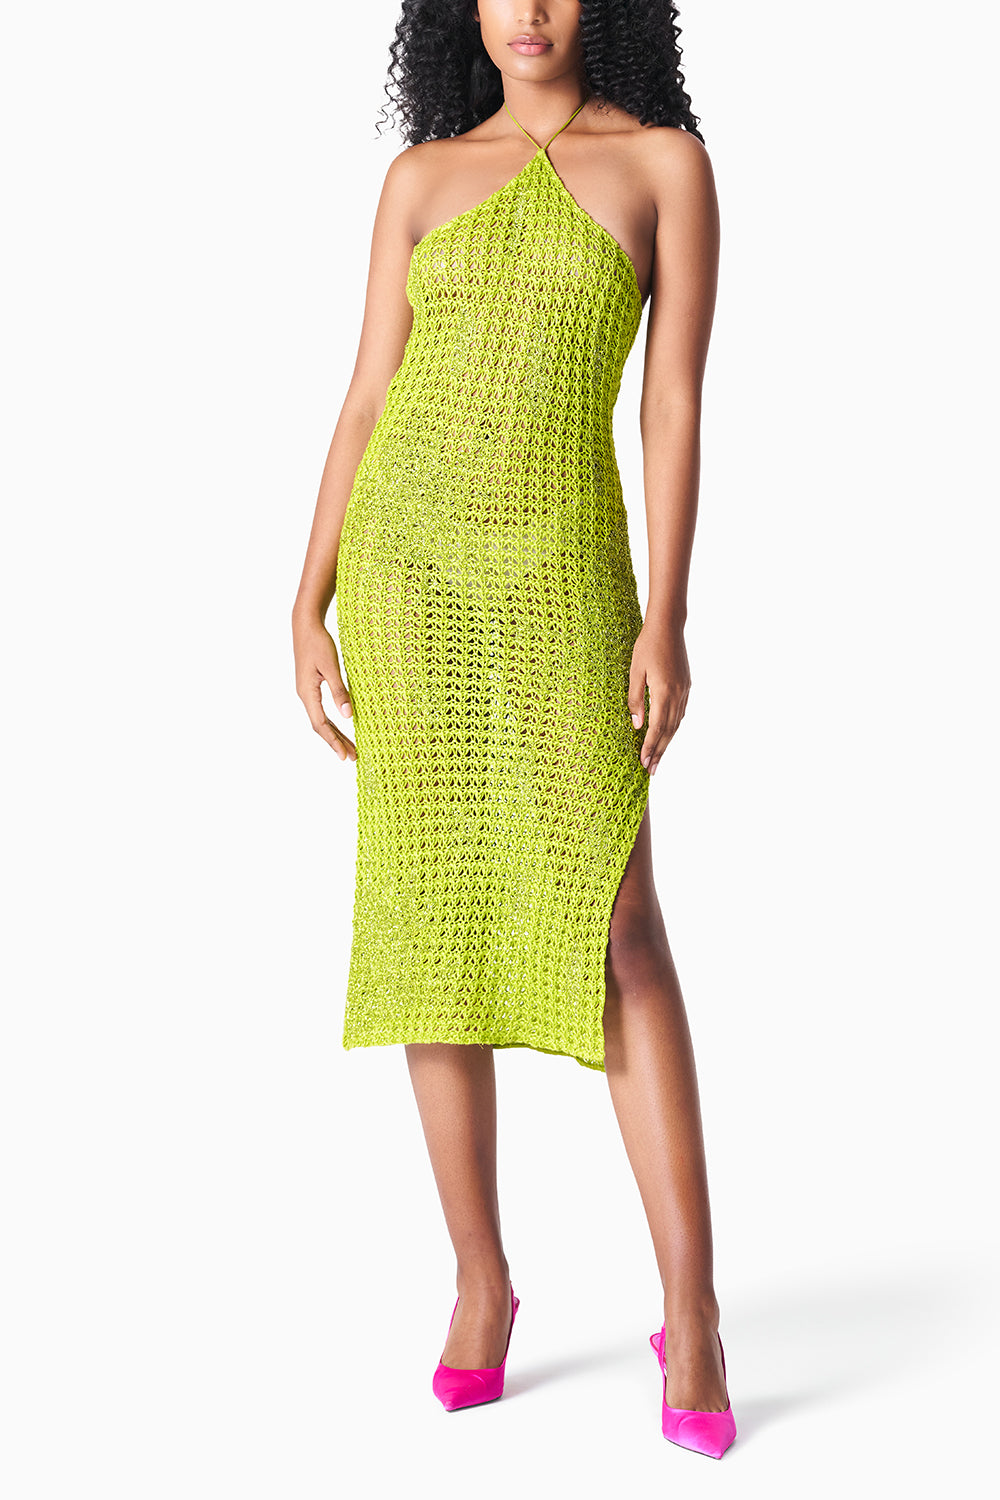 Chartreuse Linen Crocheted Dress